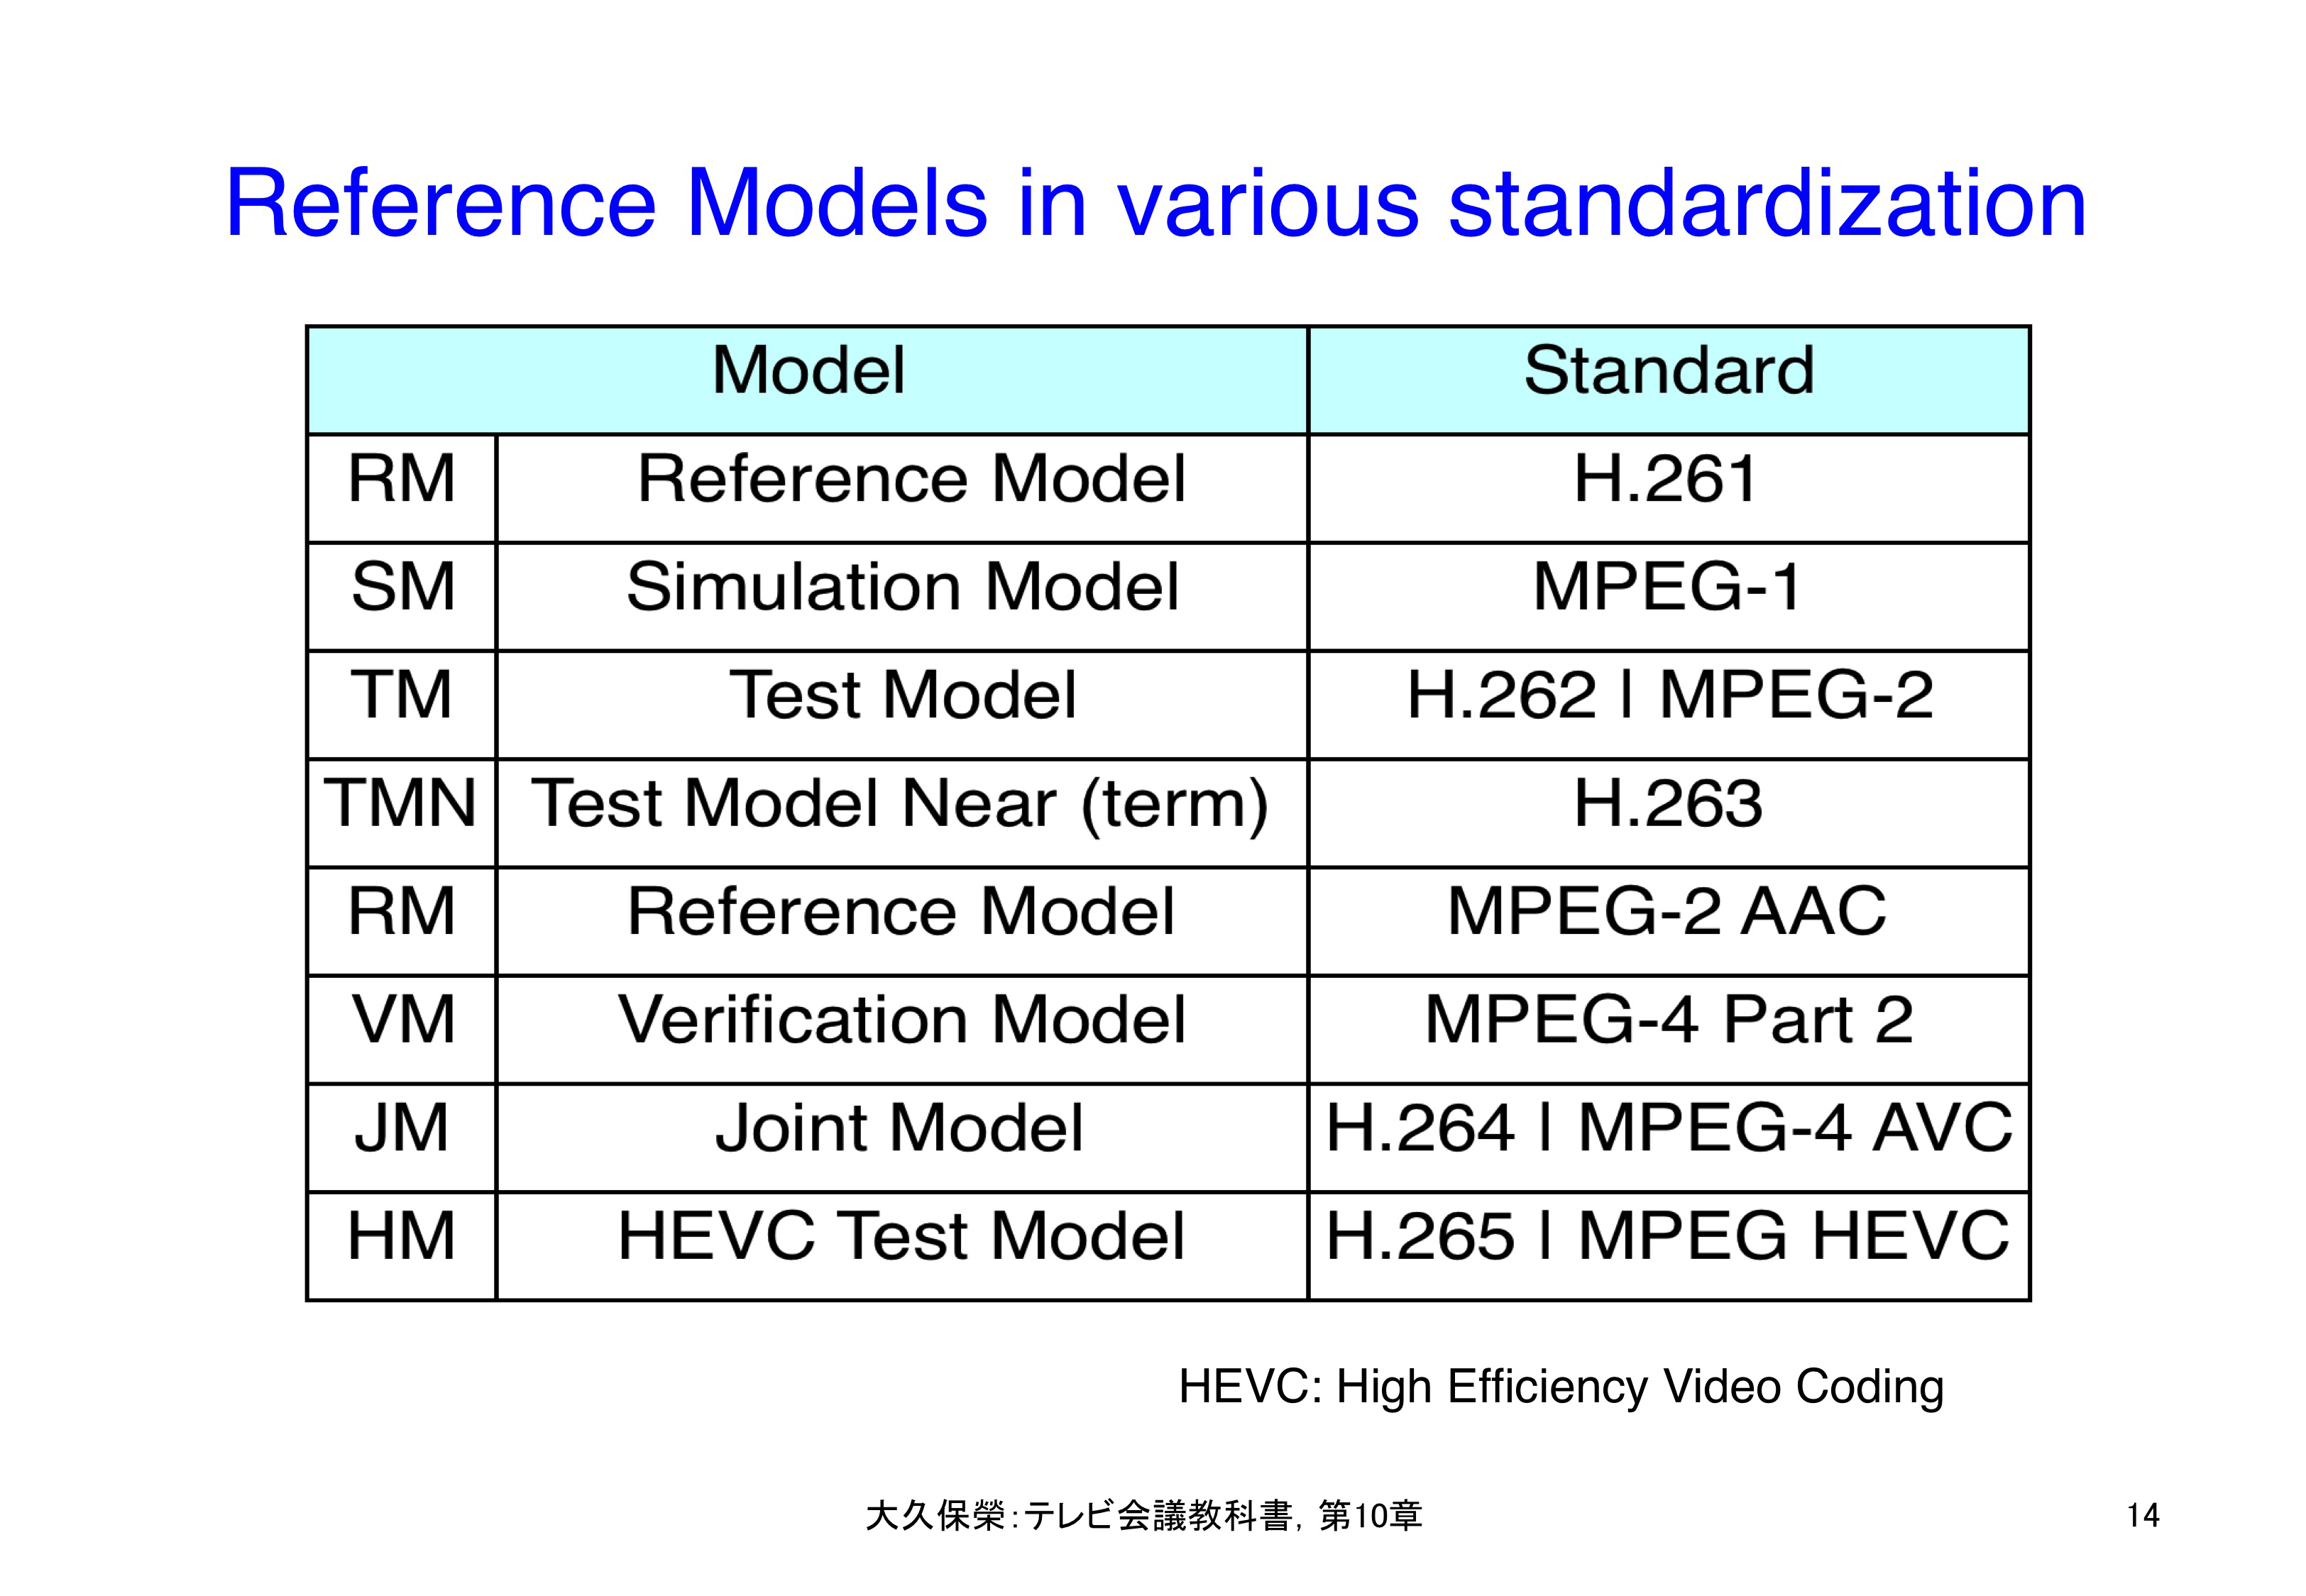 図10-14 レファレンス・モデル手法を適用した標準化